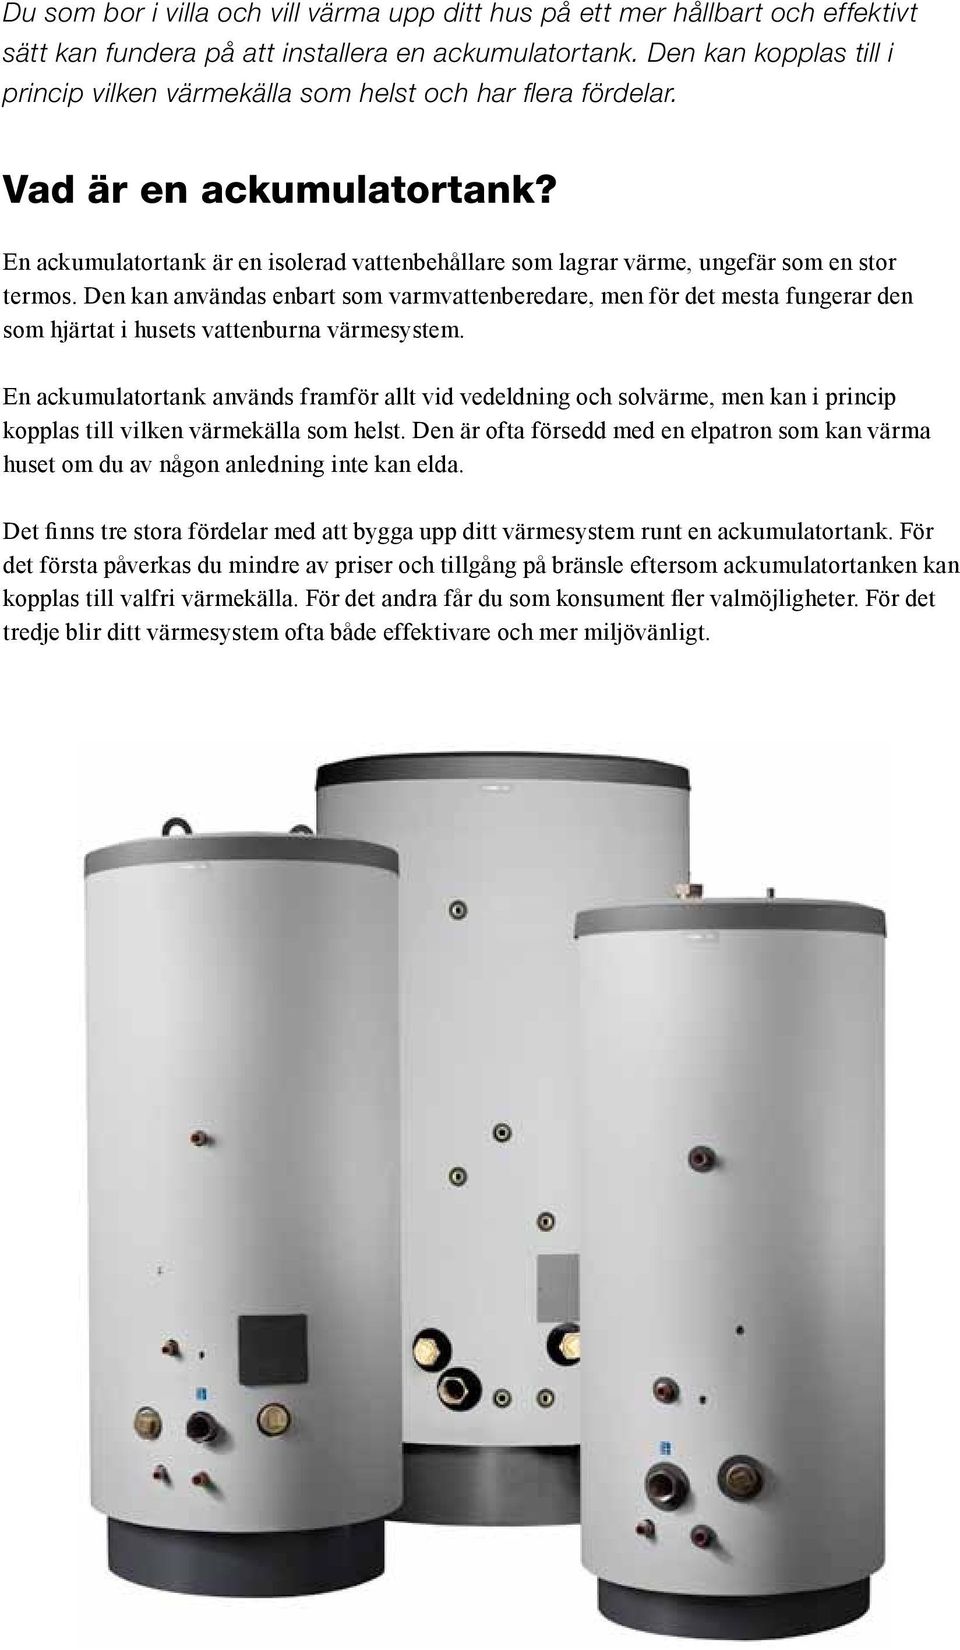 En ackumulatortank är en isolerad vattenbehållare som lagrar värme, ungefär som en stor termos.